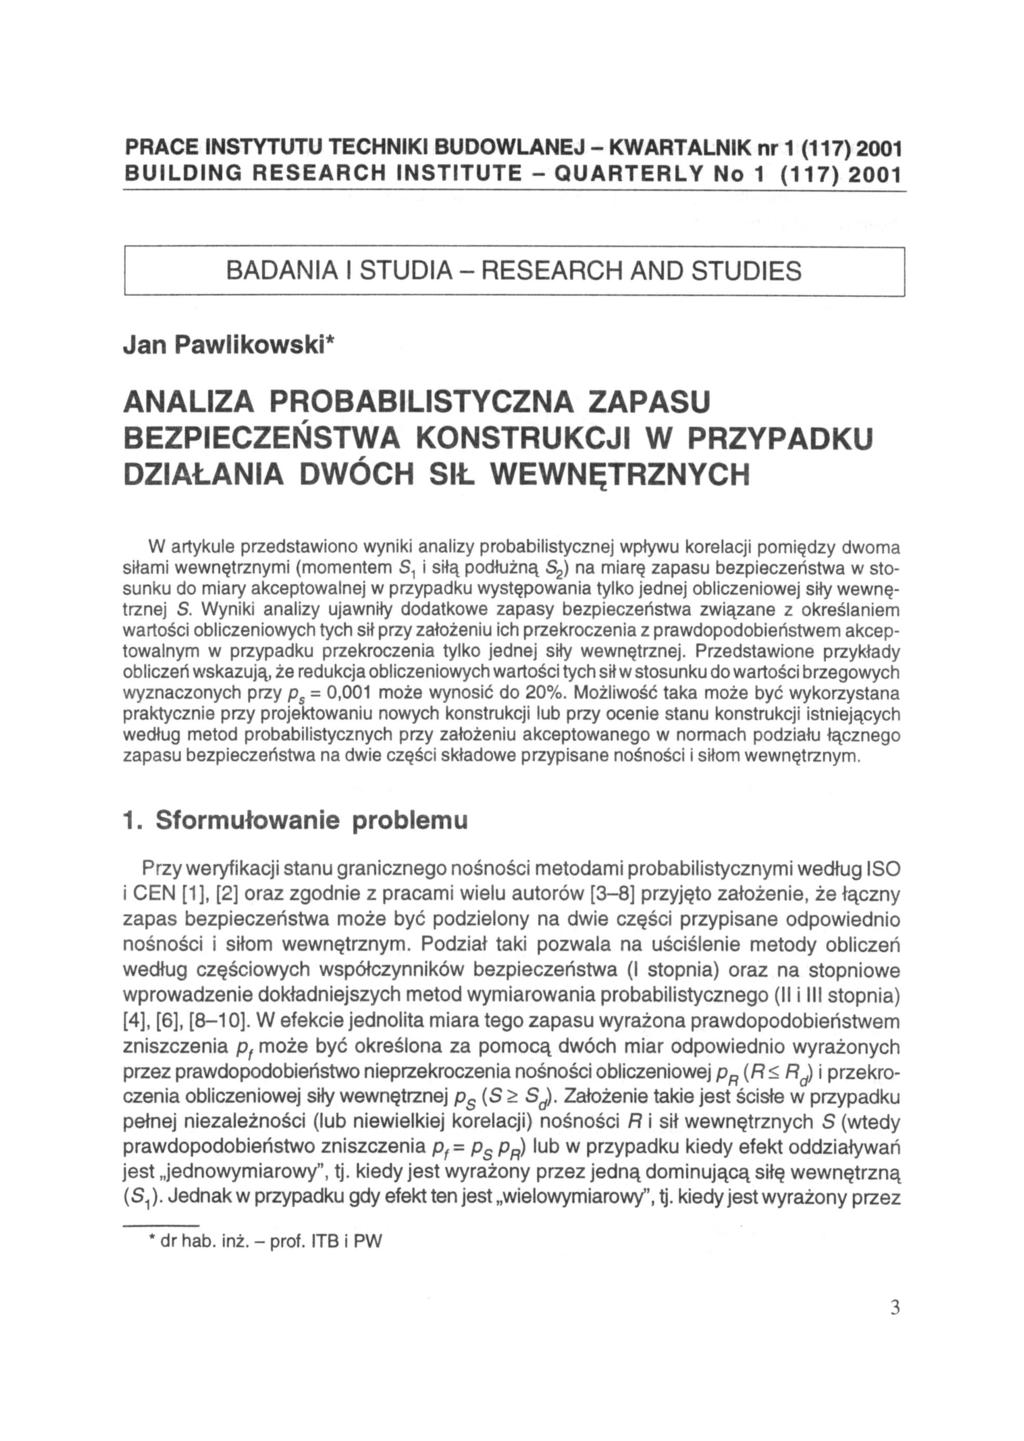 PRACE INSTYTUTU TECHNIKI BUDOWLANEJ - KWARTALNIK nr 1 (117) 2001 BUILDING RESEARCH INSTITUTE - QUARTERLY No 1 (117) 2001 BADANIA I STUDIA - RESEARCH AND STUDIES Jan Pawlikowski* ANALIZA